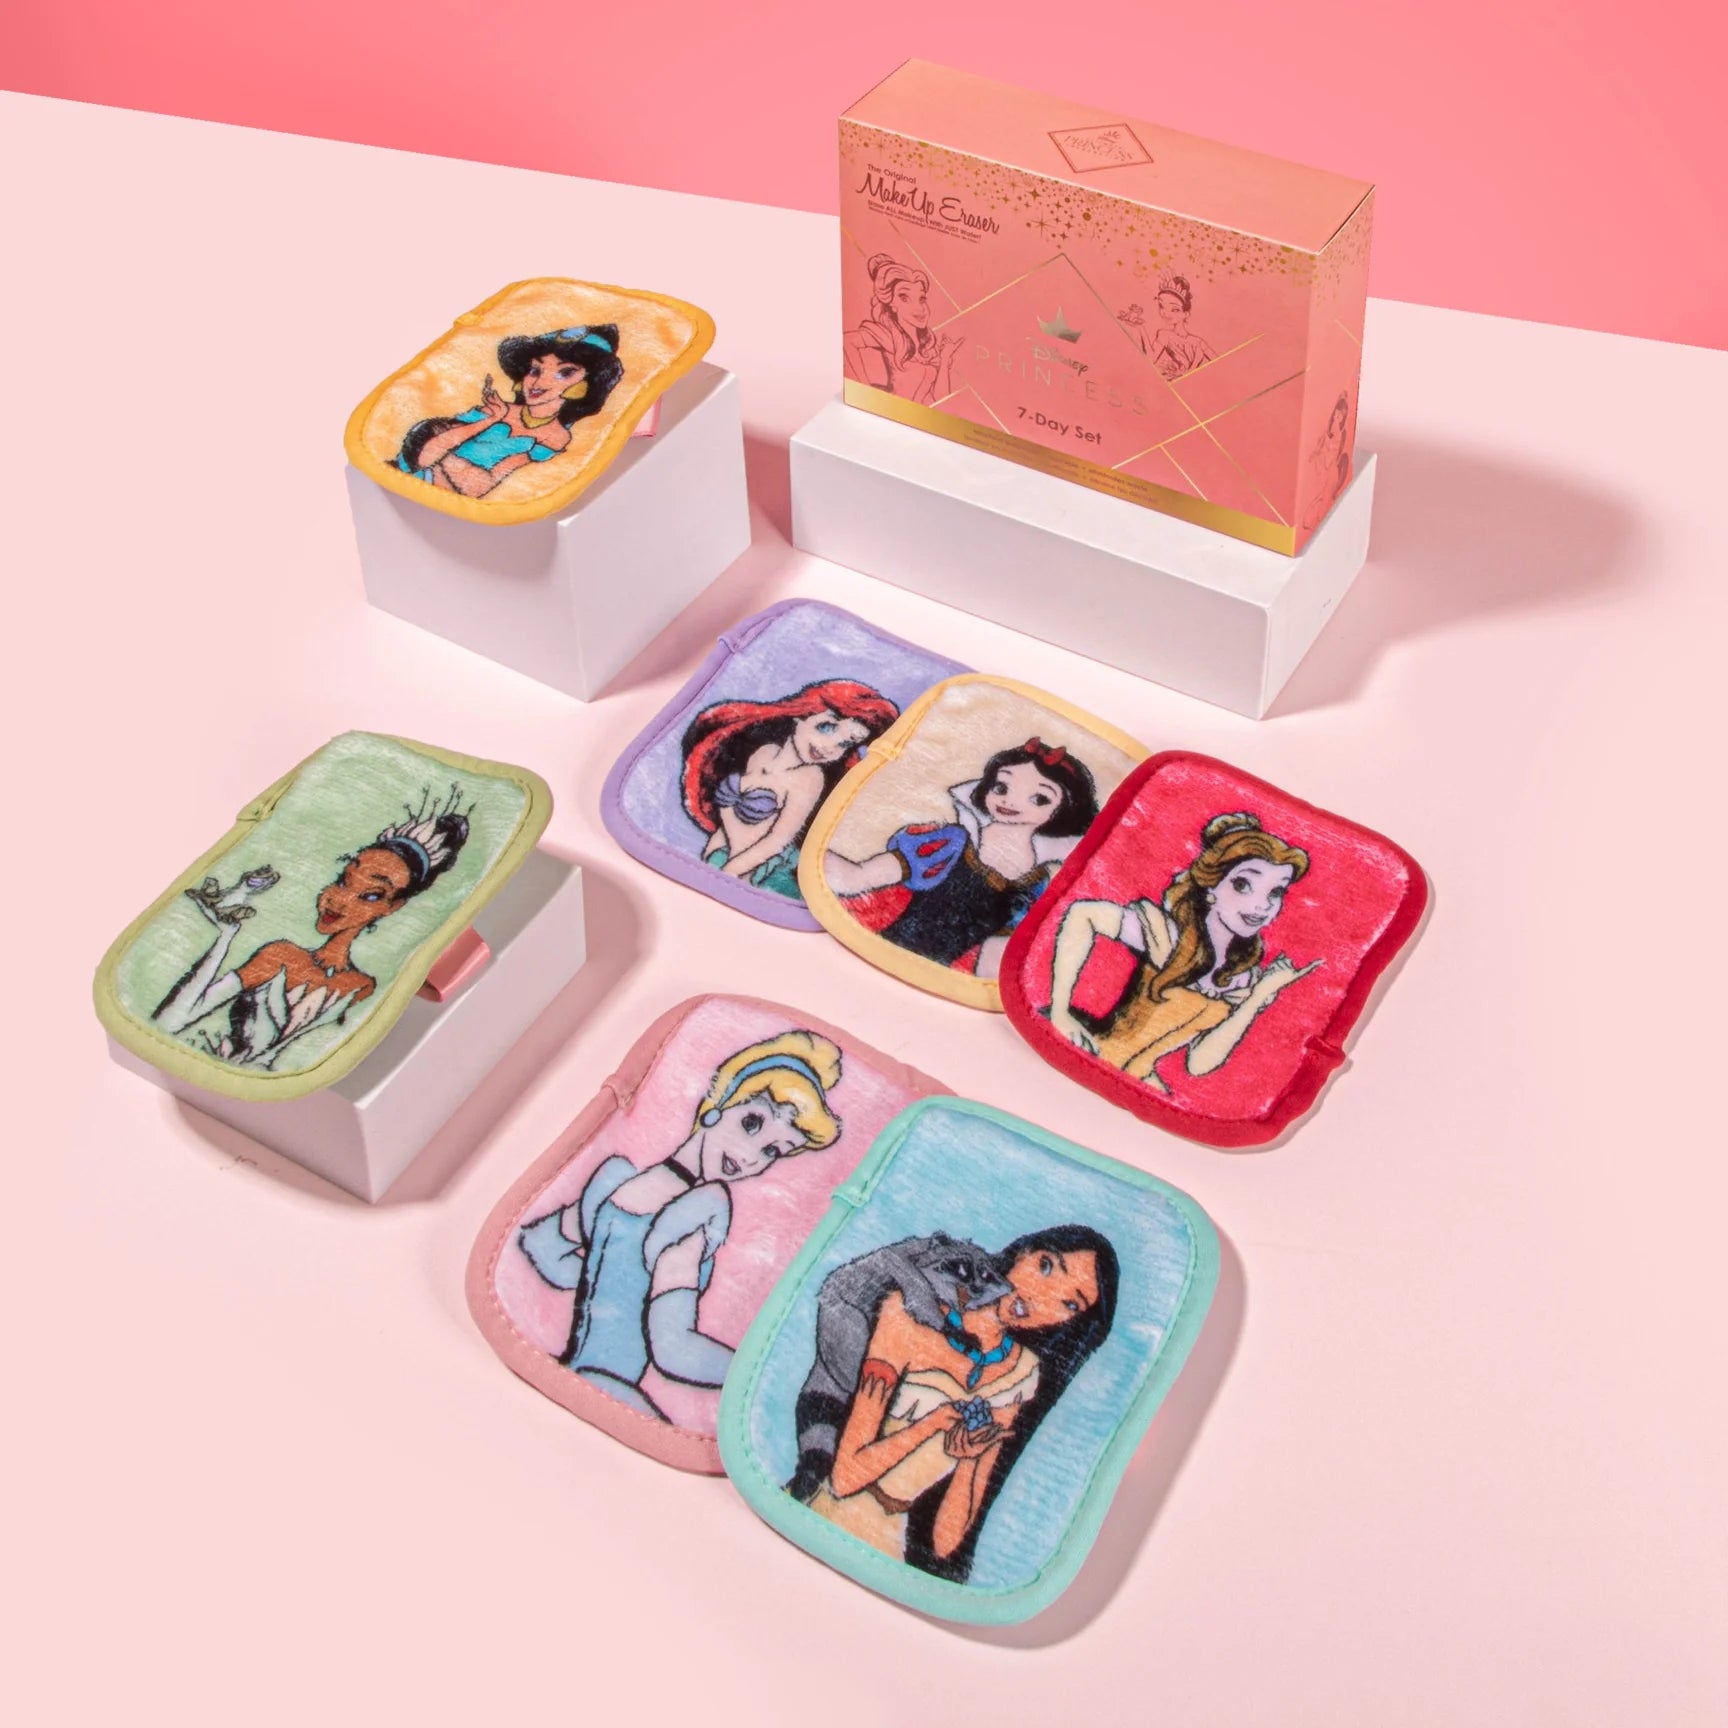 MakeUp Eraser - Ultimate Disney Princess 7-Day Set